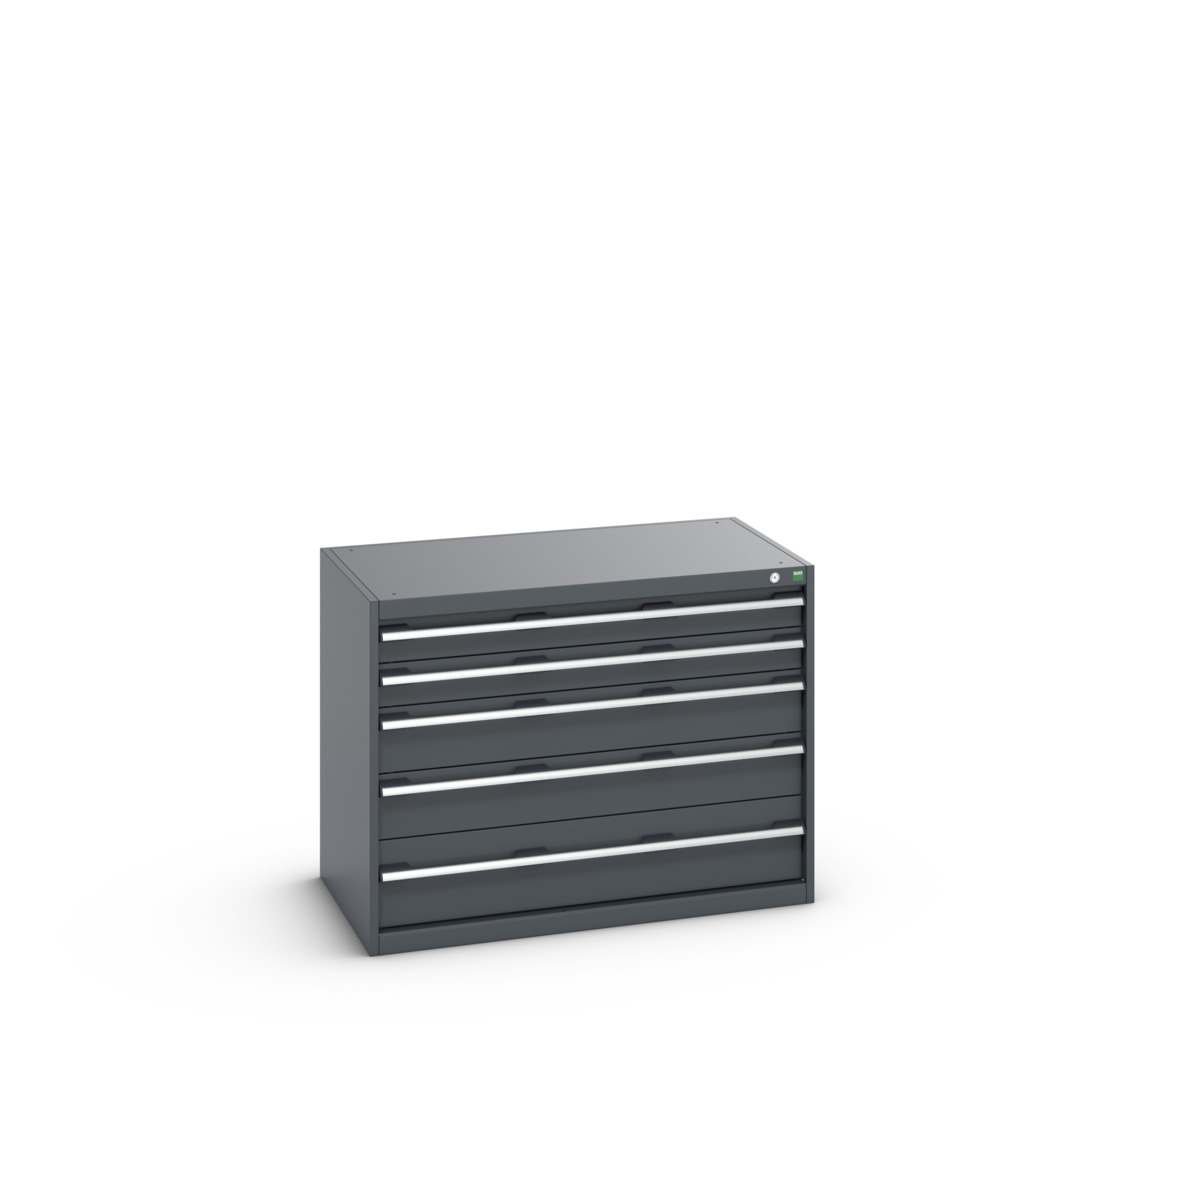 40021010.77V - cubio drawer cabinet